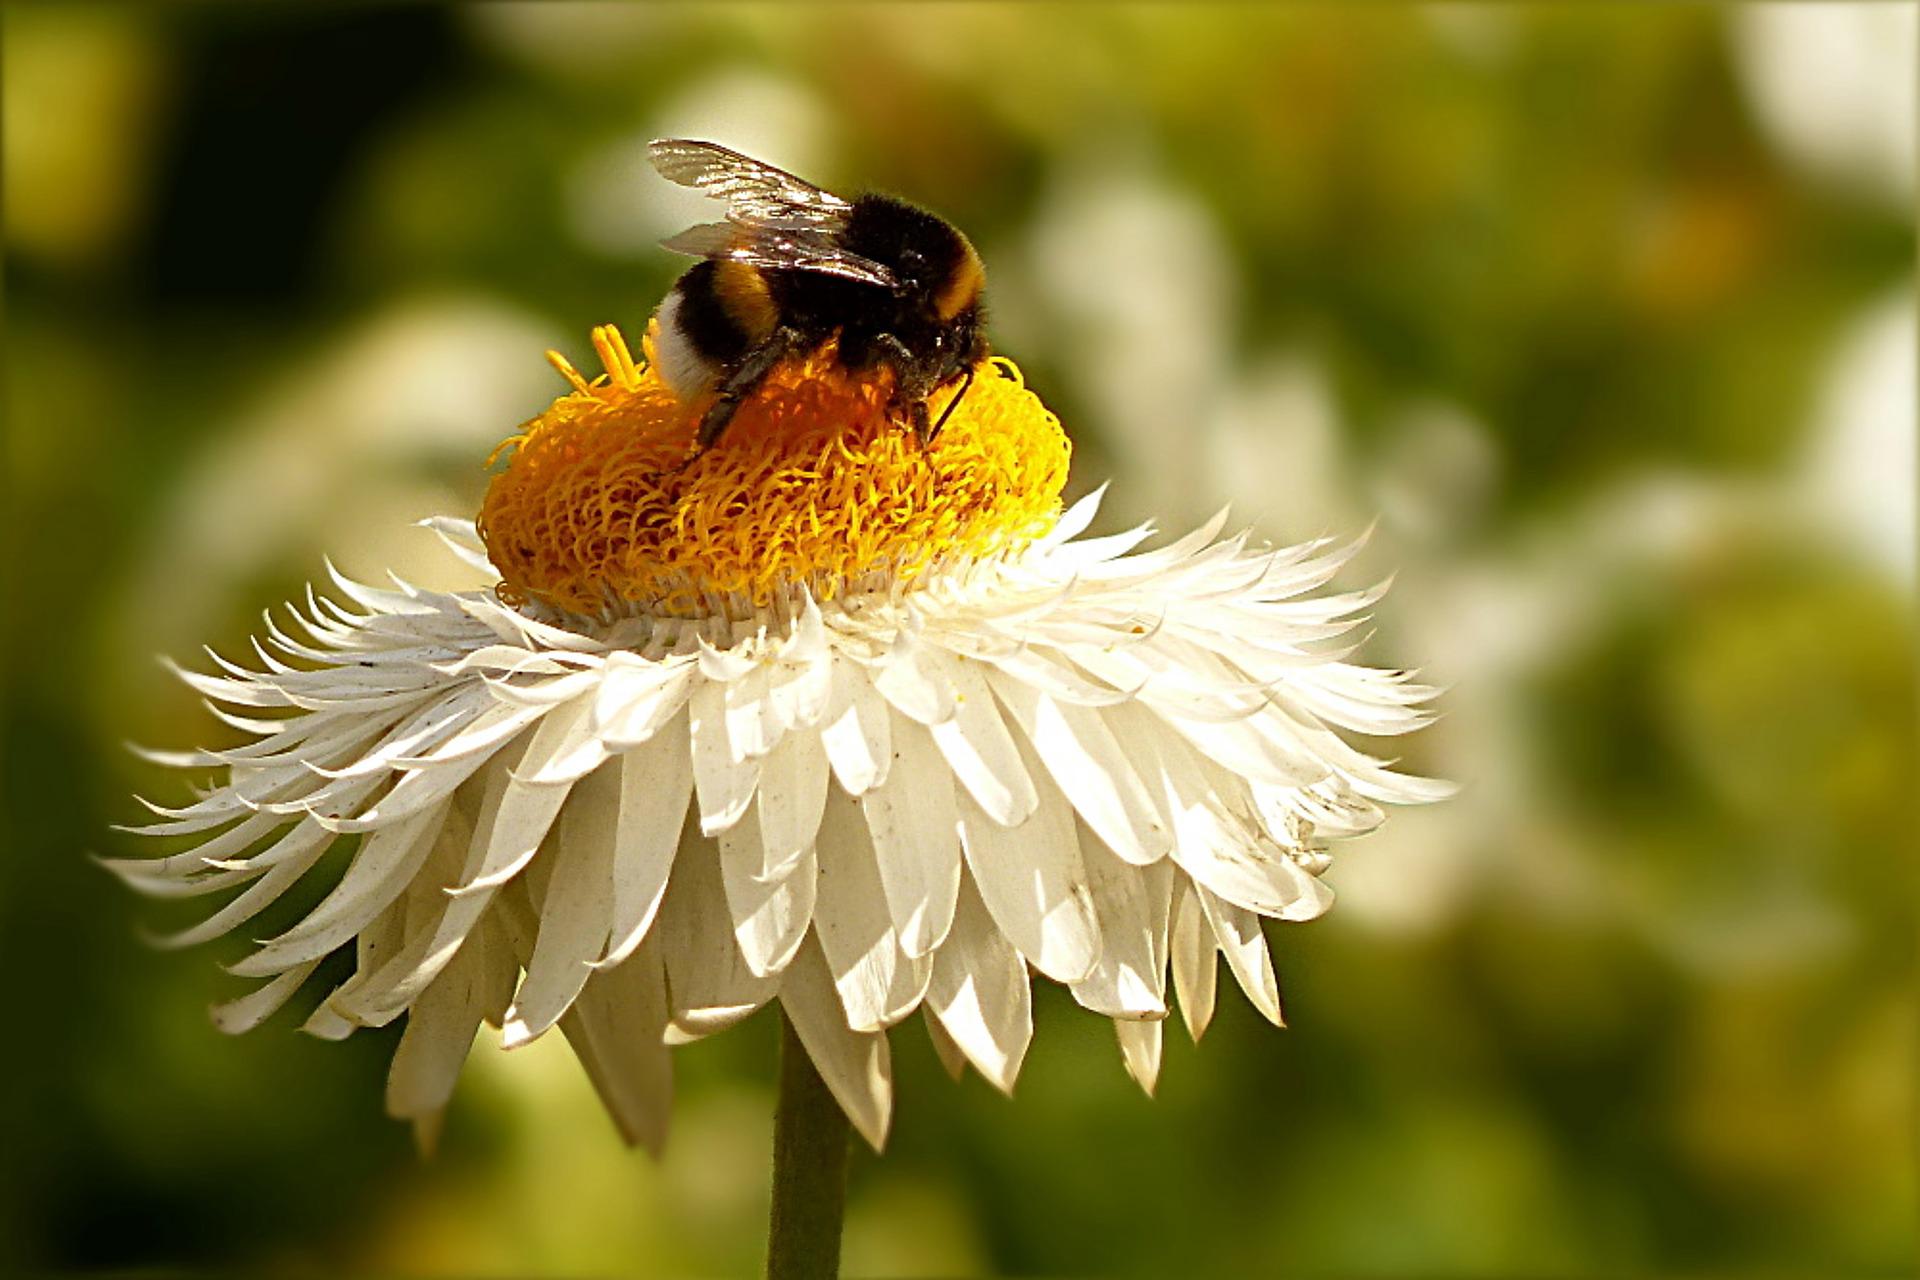 bumblebee on a daisy